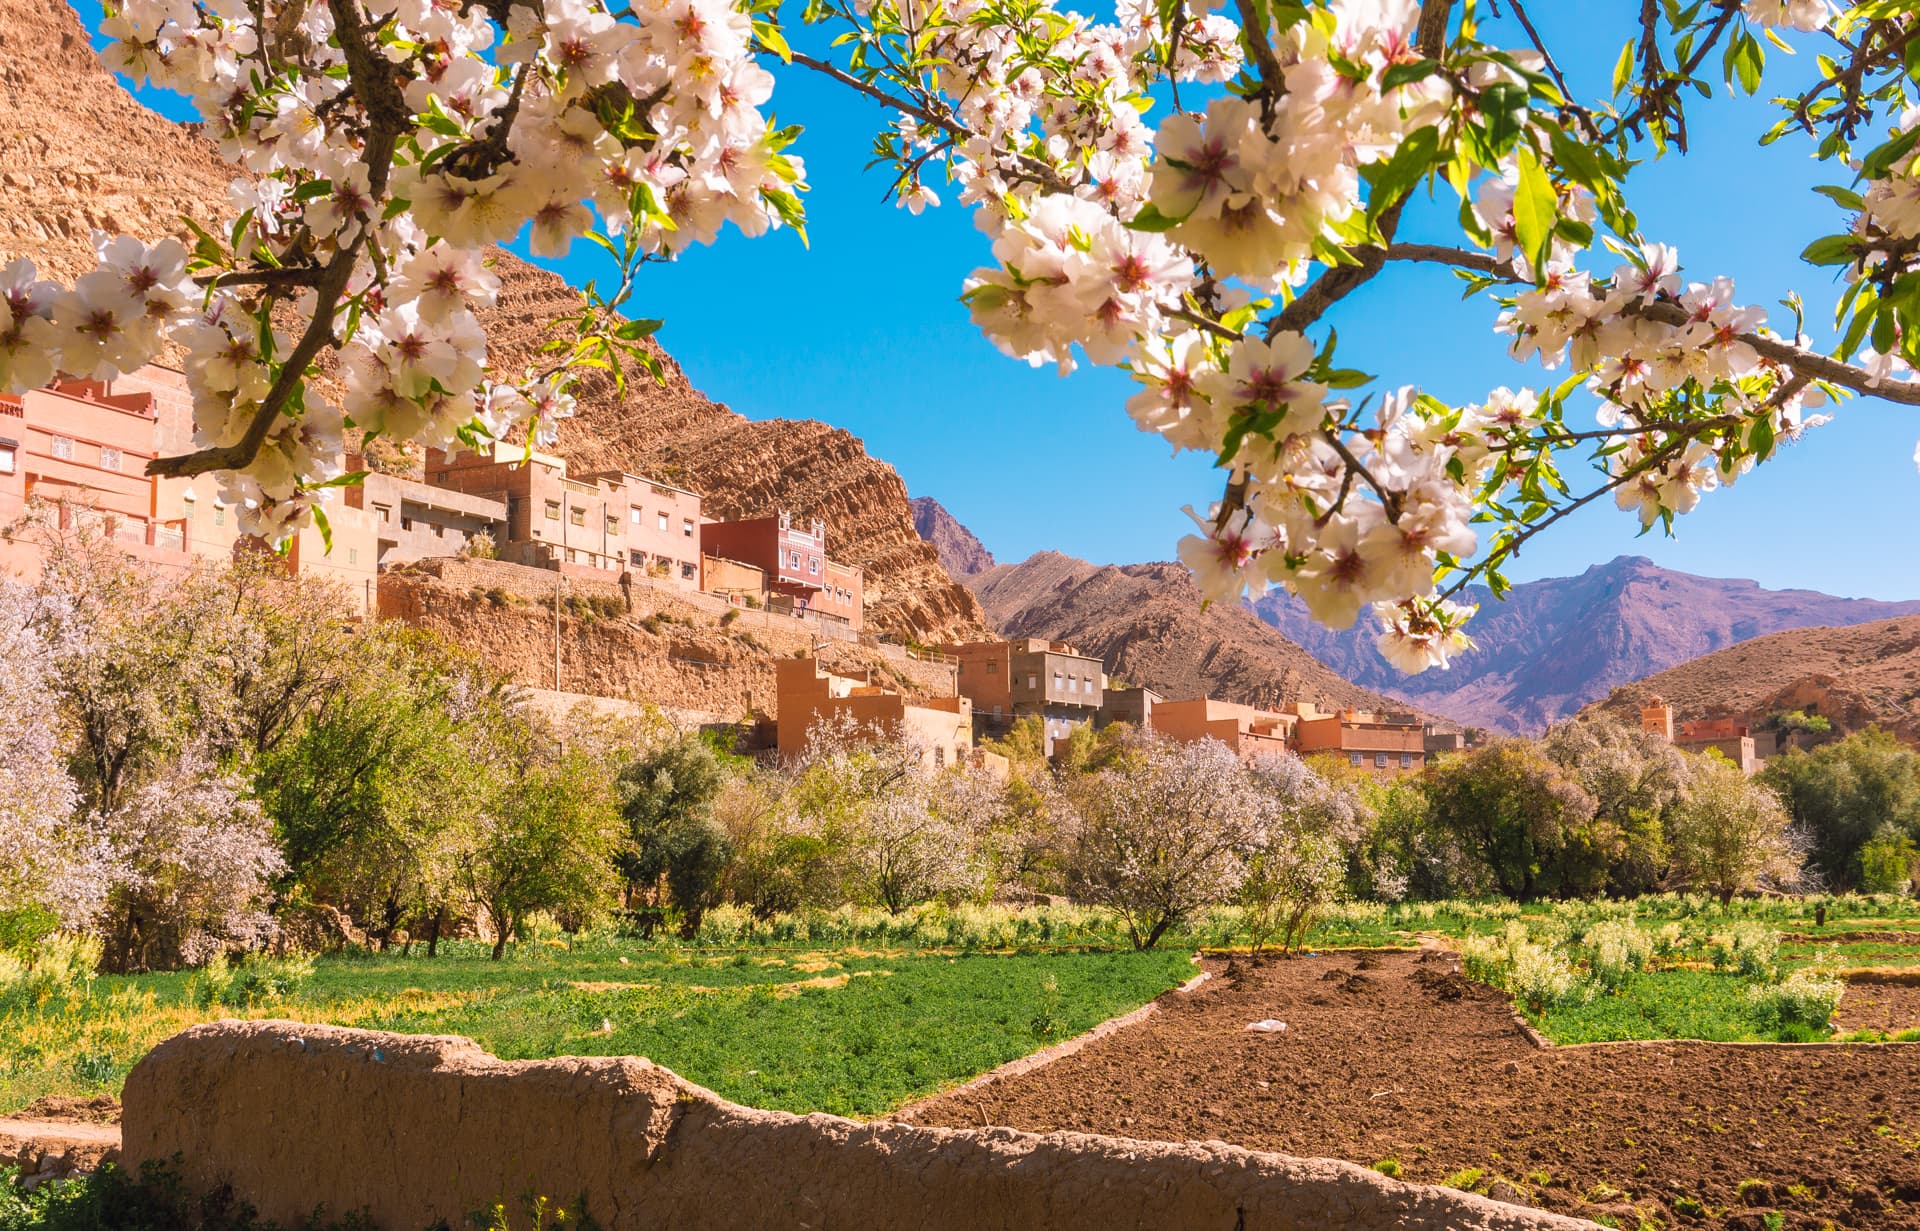 Wiosna w Maroko | Plan wyjazdu do Maroko